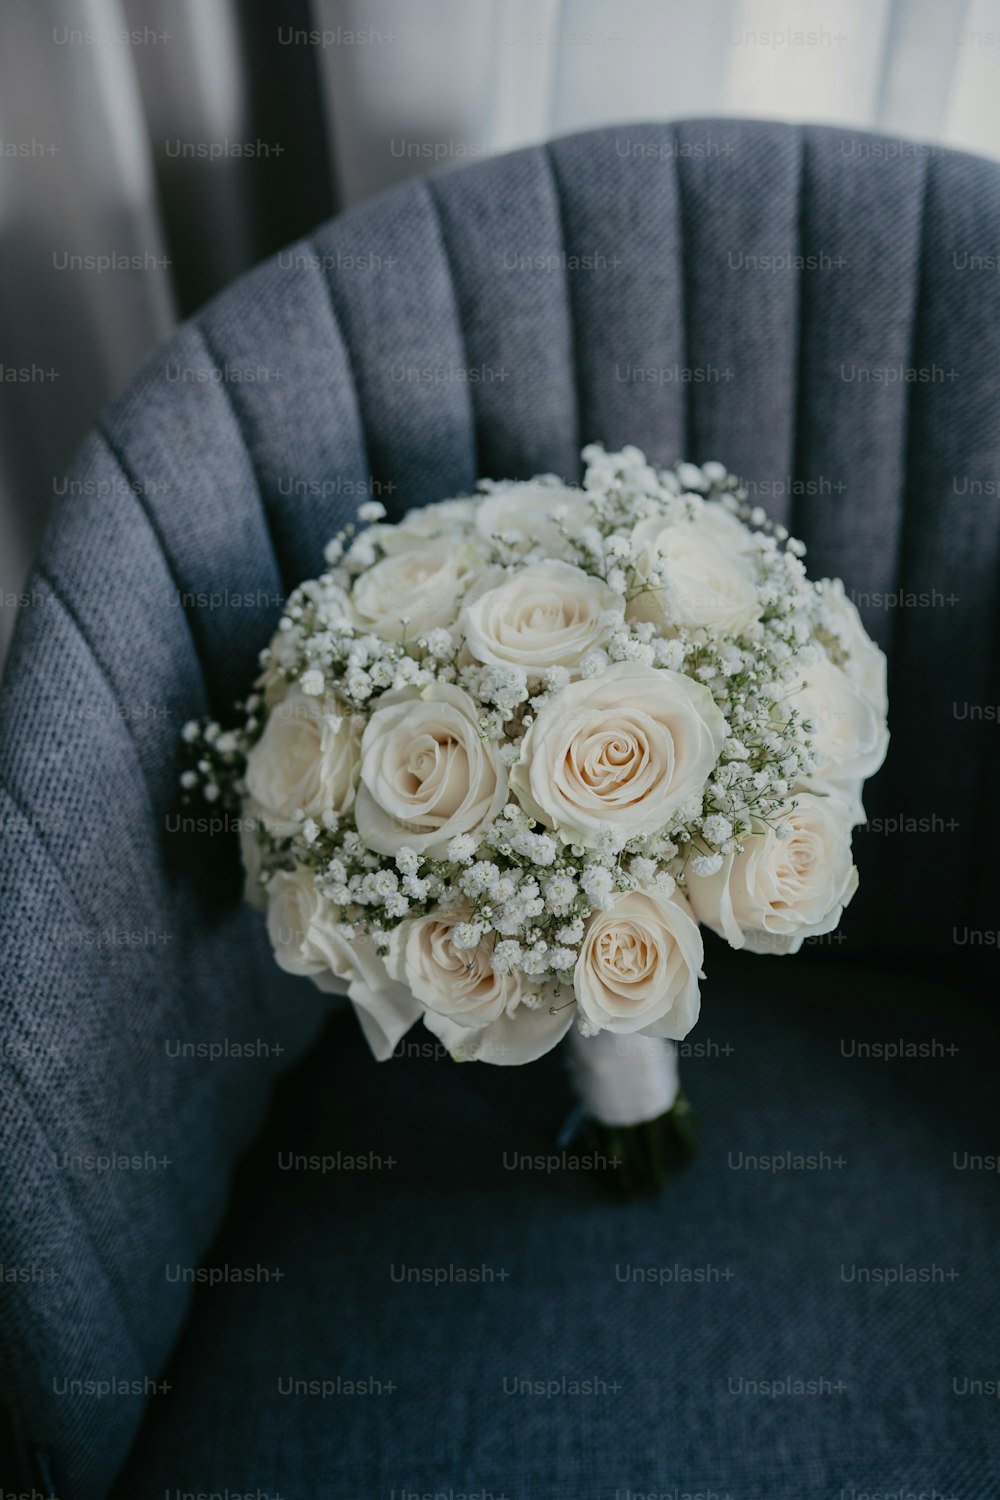 Un bouquet de roses blanches est posé sur une chaise